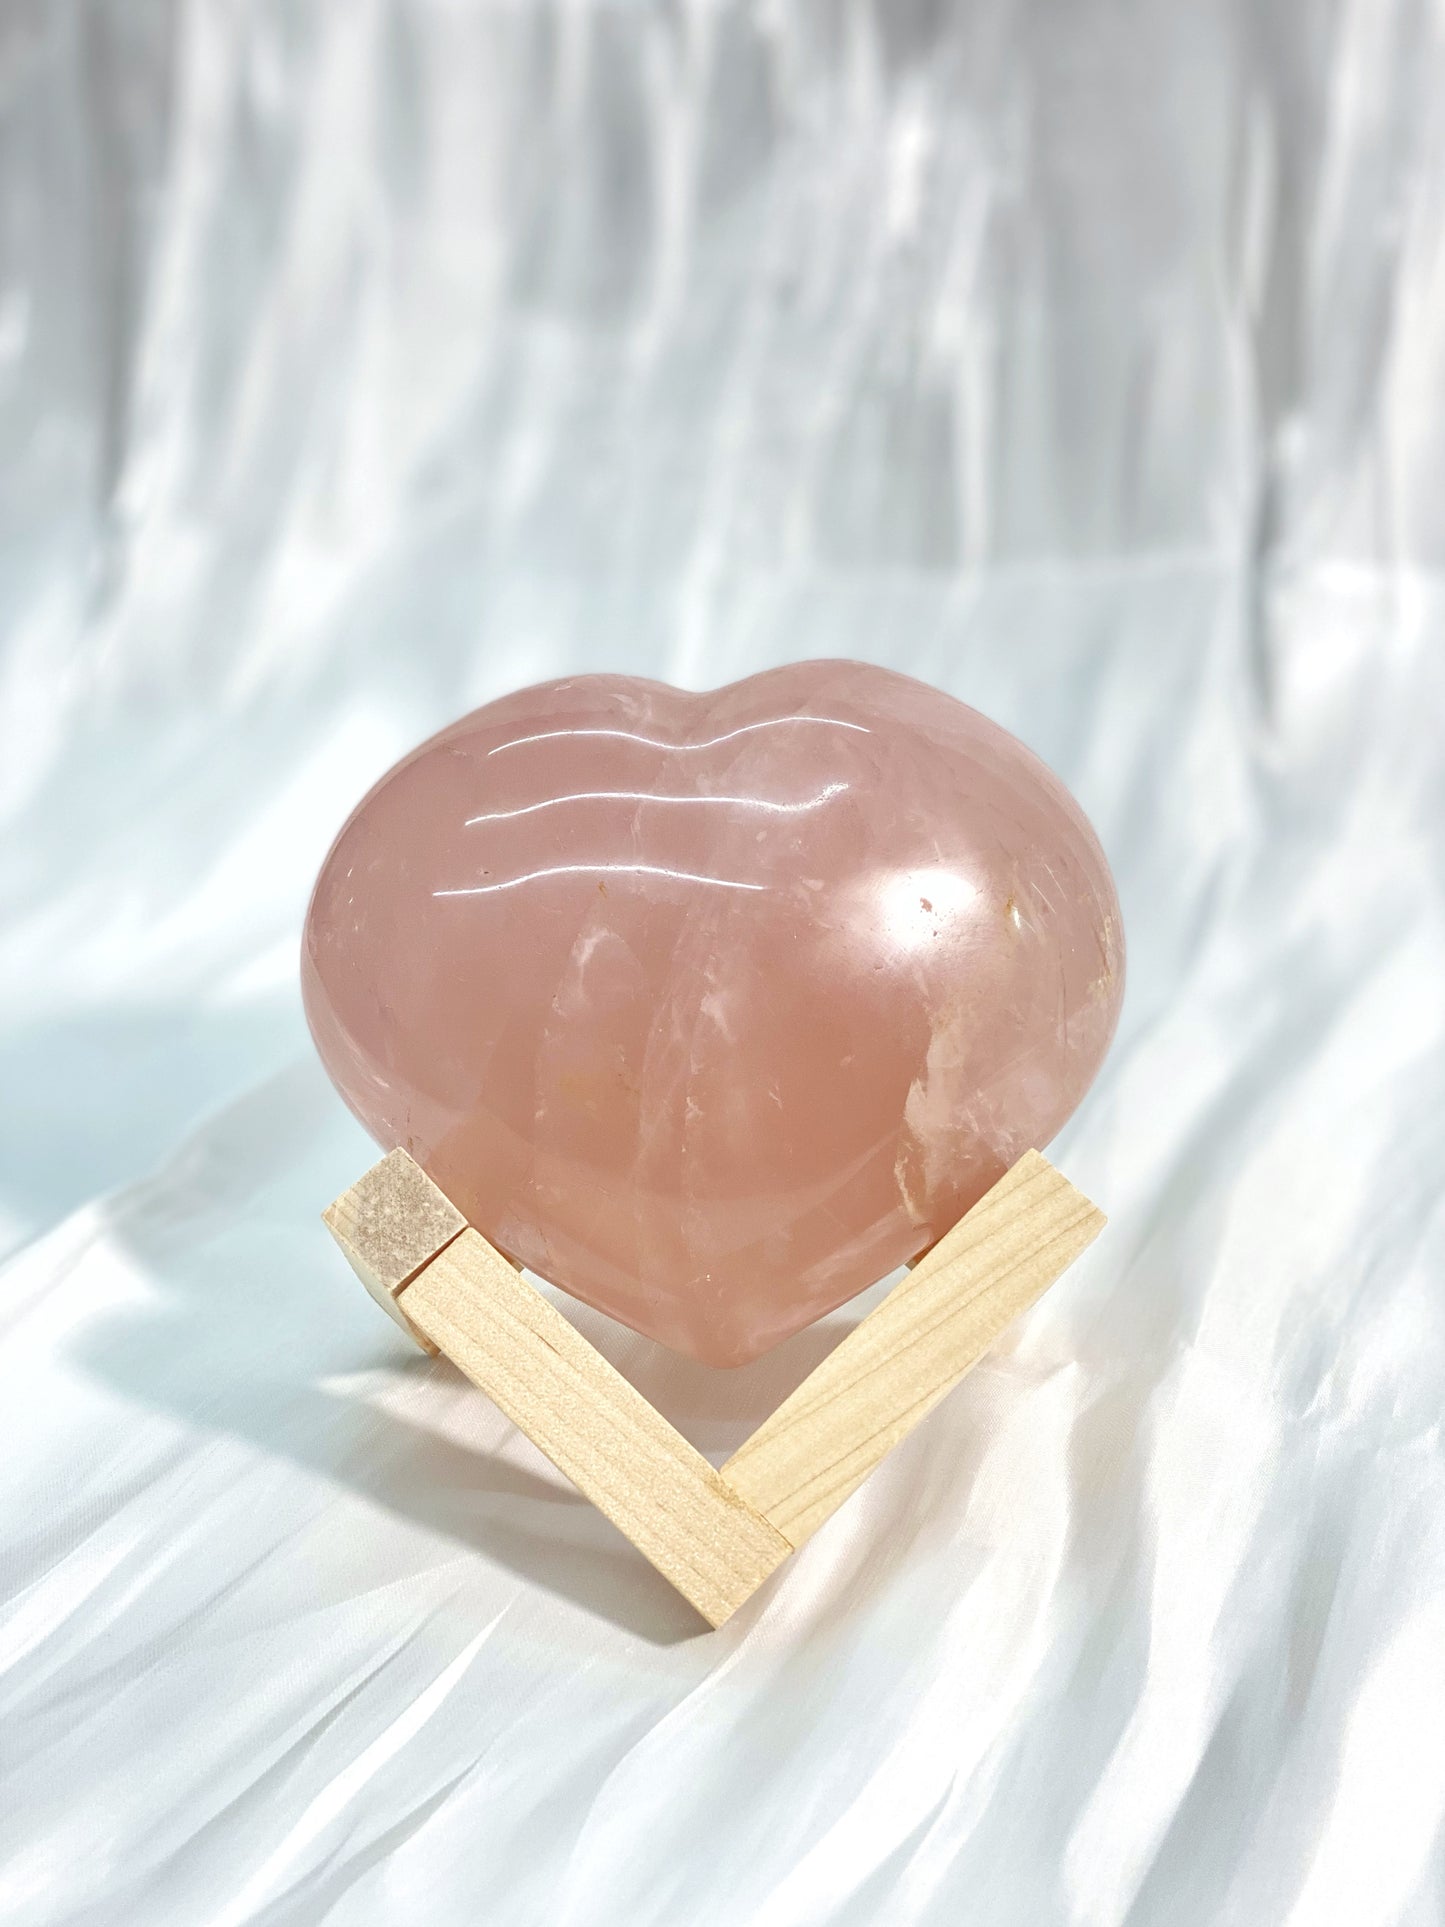 心型粉晶 Heart Rose Quartz 985 grams